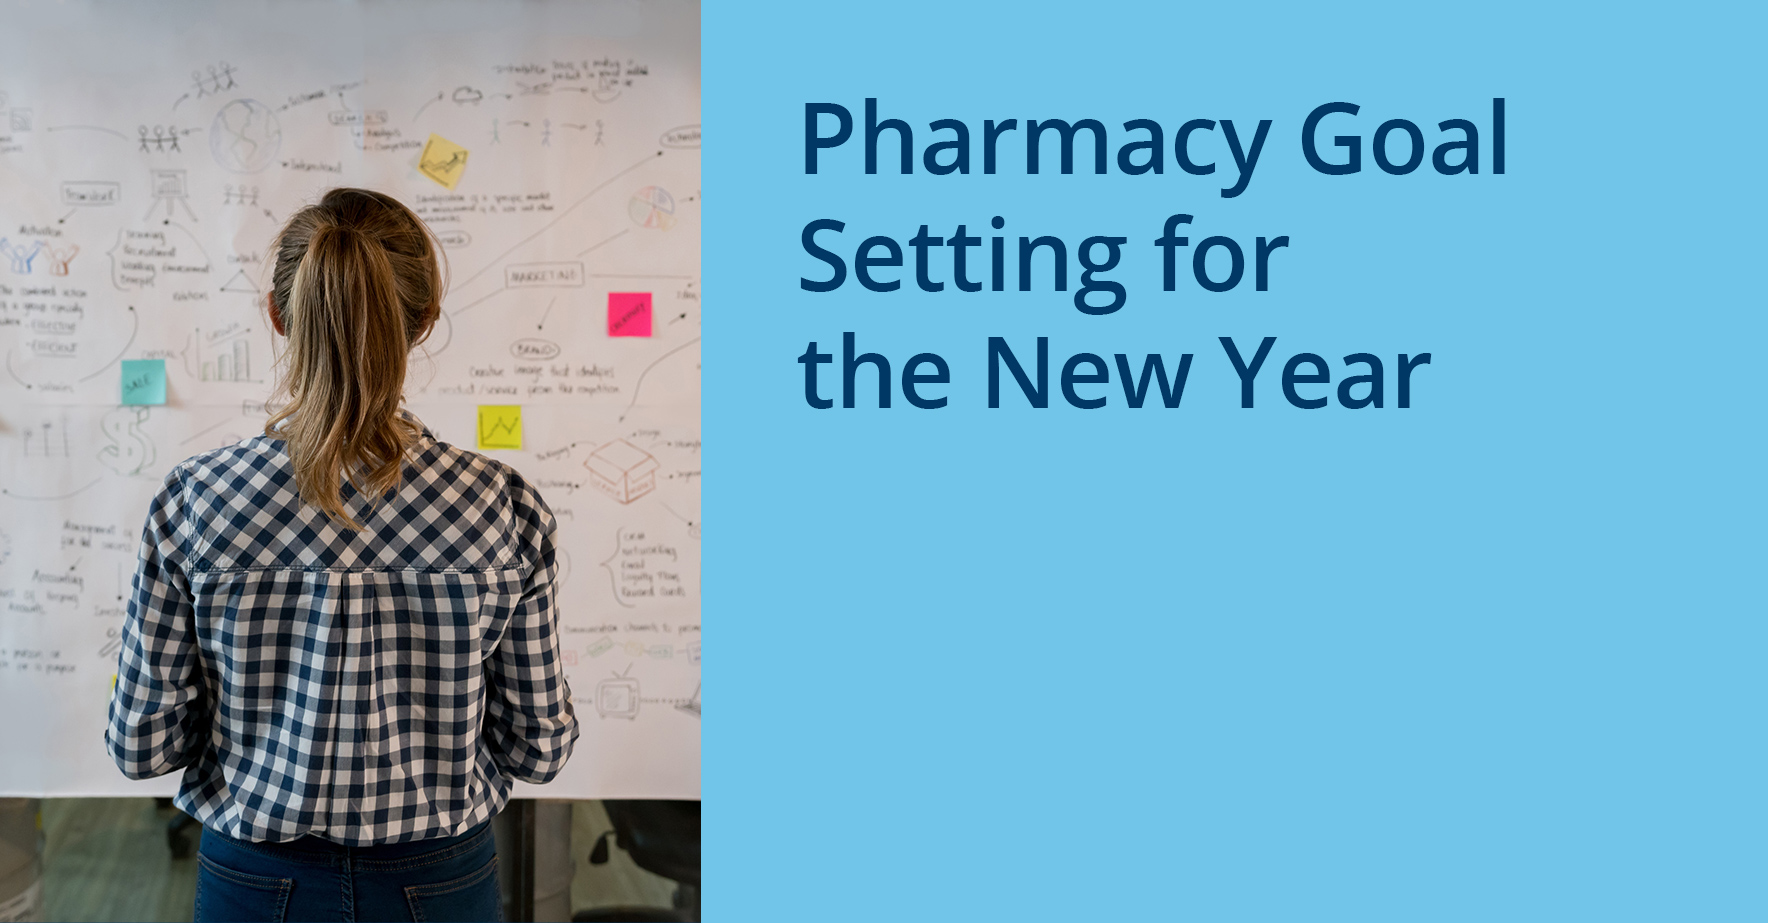 Pharmacy_Goal_setting_for_the_new_year.jpg.